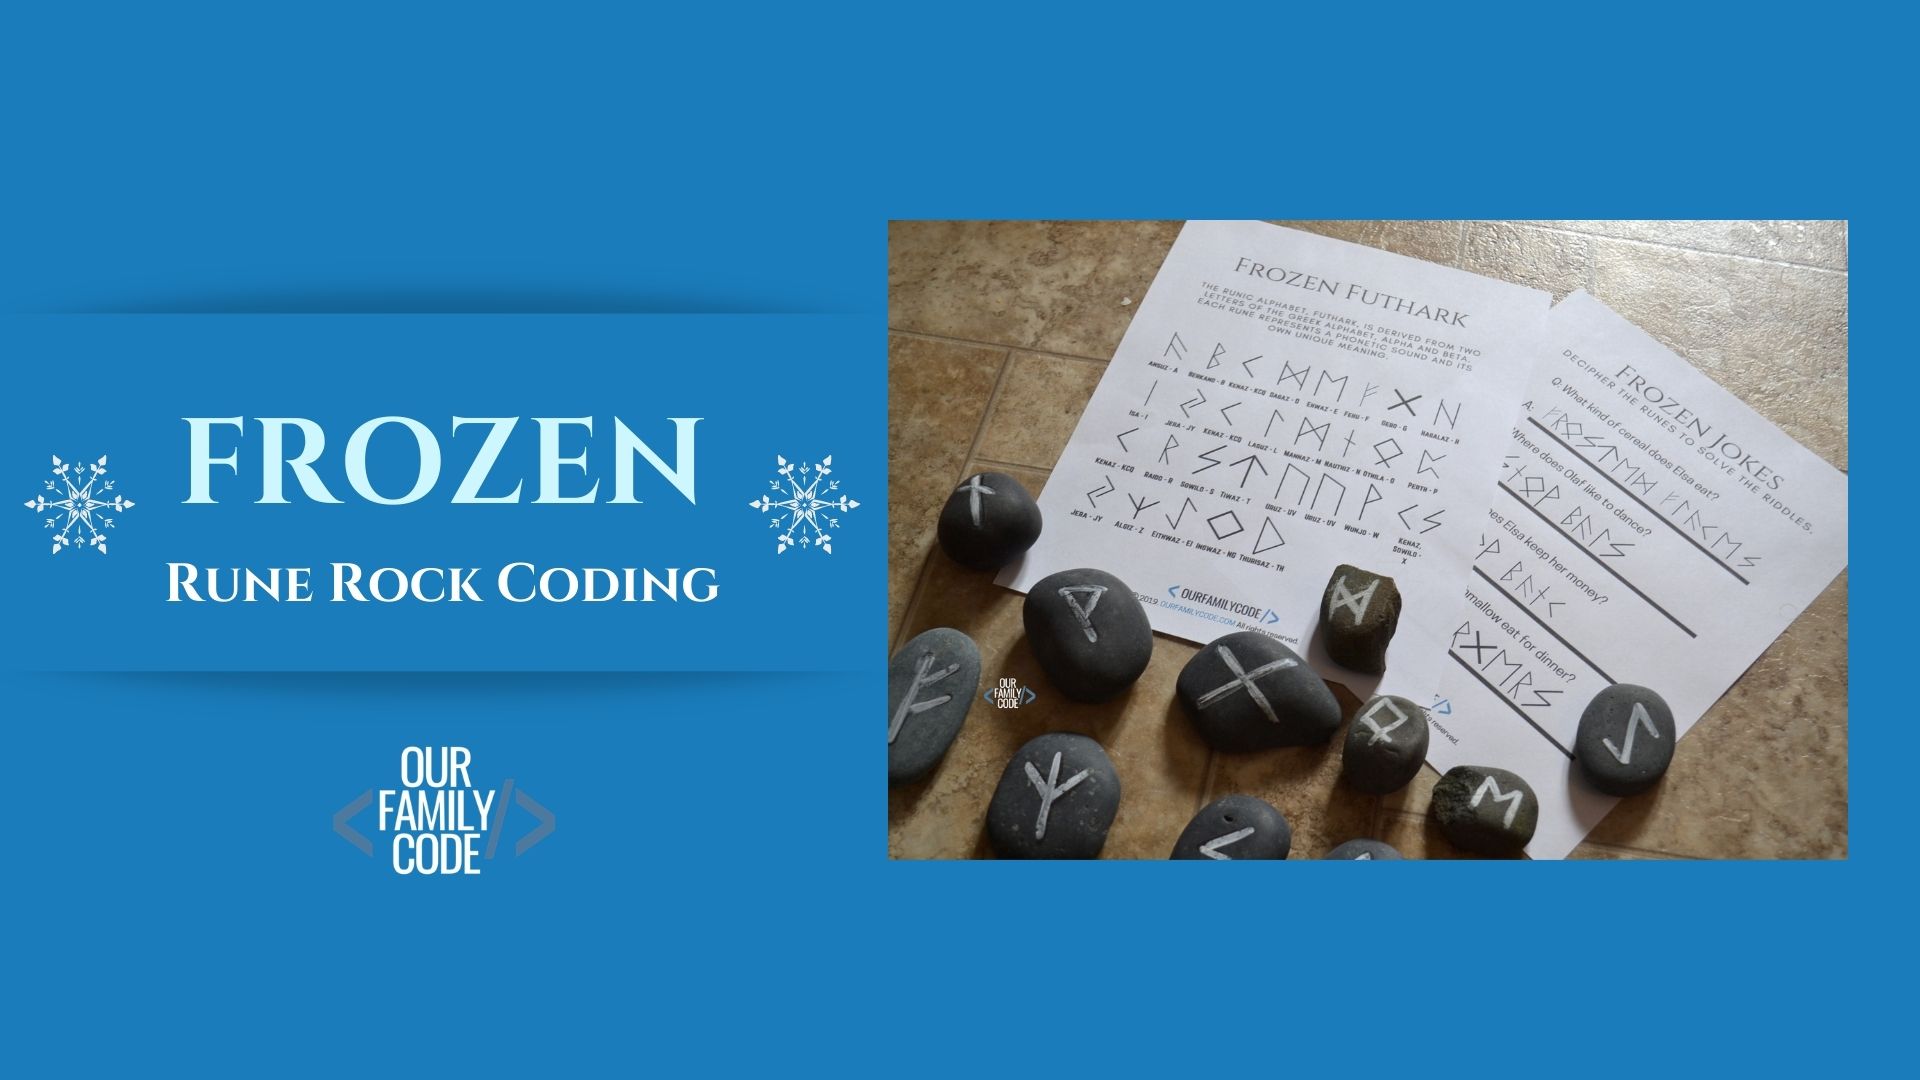 BH-FB-Frozen-coding-Rune-Rocks-frozen-steam